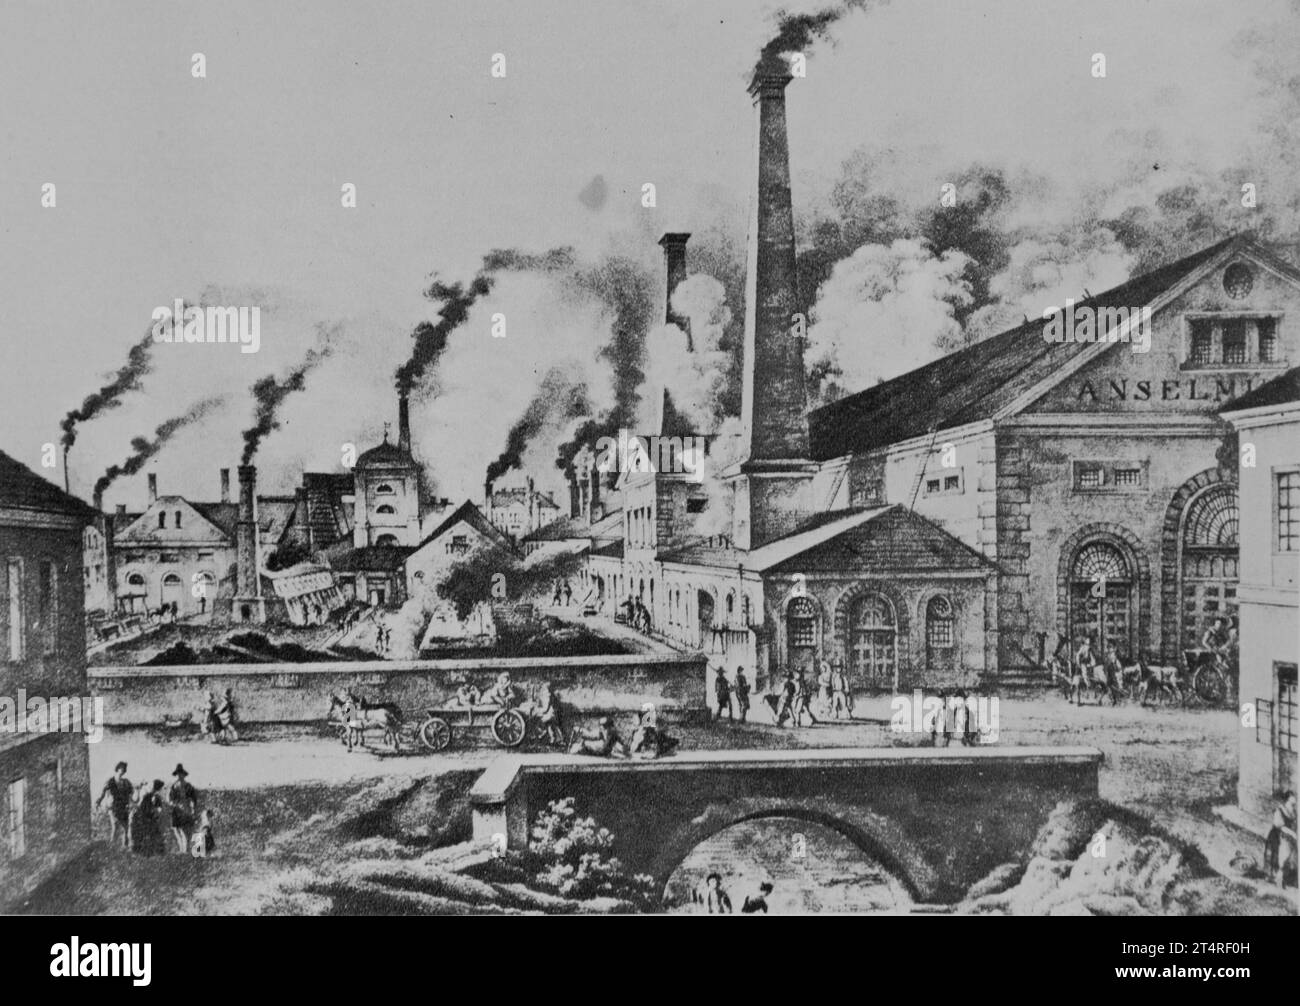 Paysage industriel anglais typique, 19e siècle. La fumée dense sortant des cheminées d'usine pollue l'air. Auteur inconnu. Banque D'Images